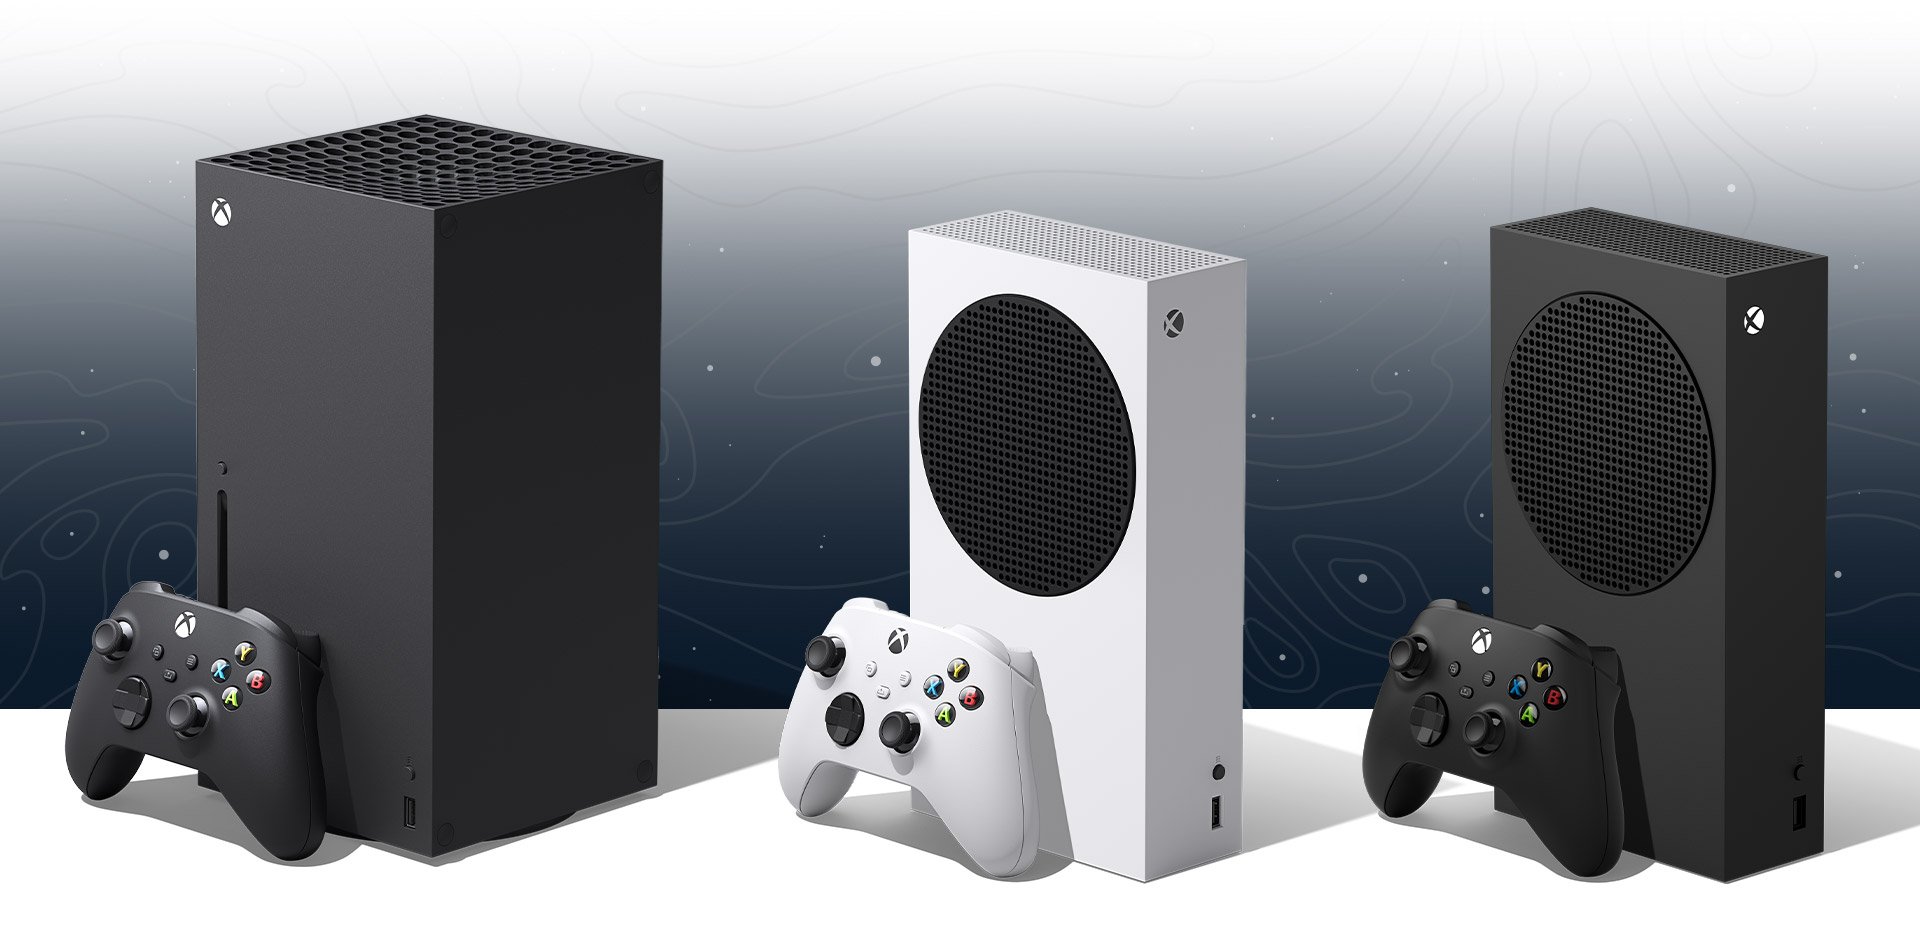 Sommige uitgevers zetten naar verluidt vraagtekens bij de ondersteuning van Xbox vanwege de “vlakke” verkopen.